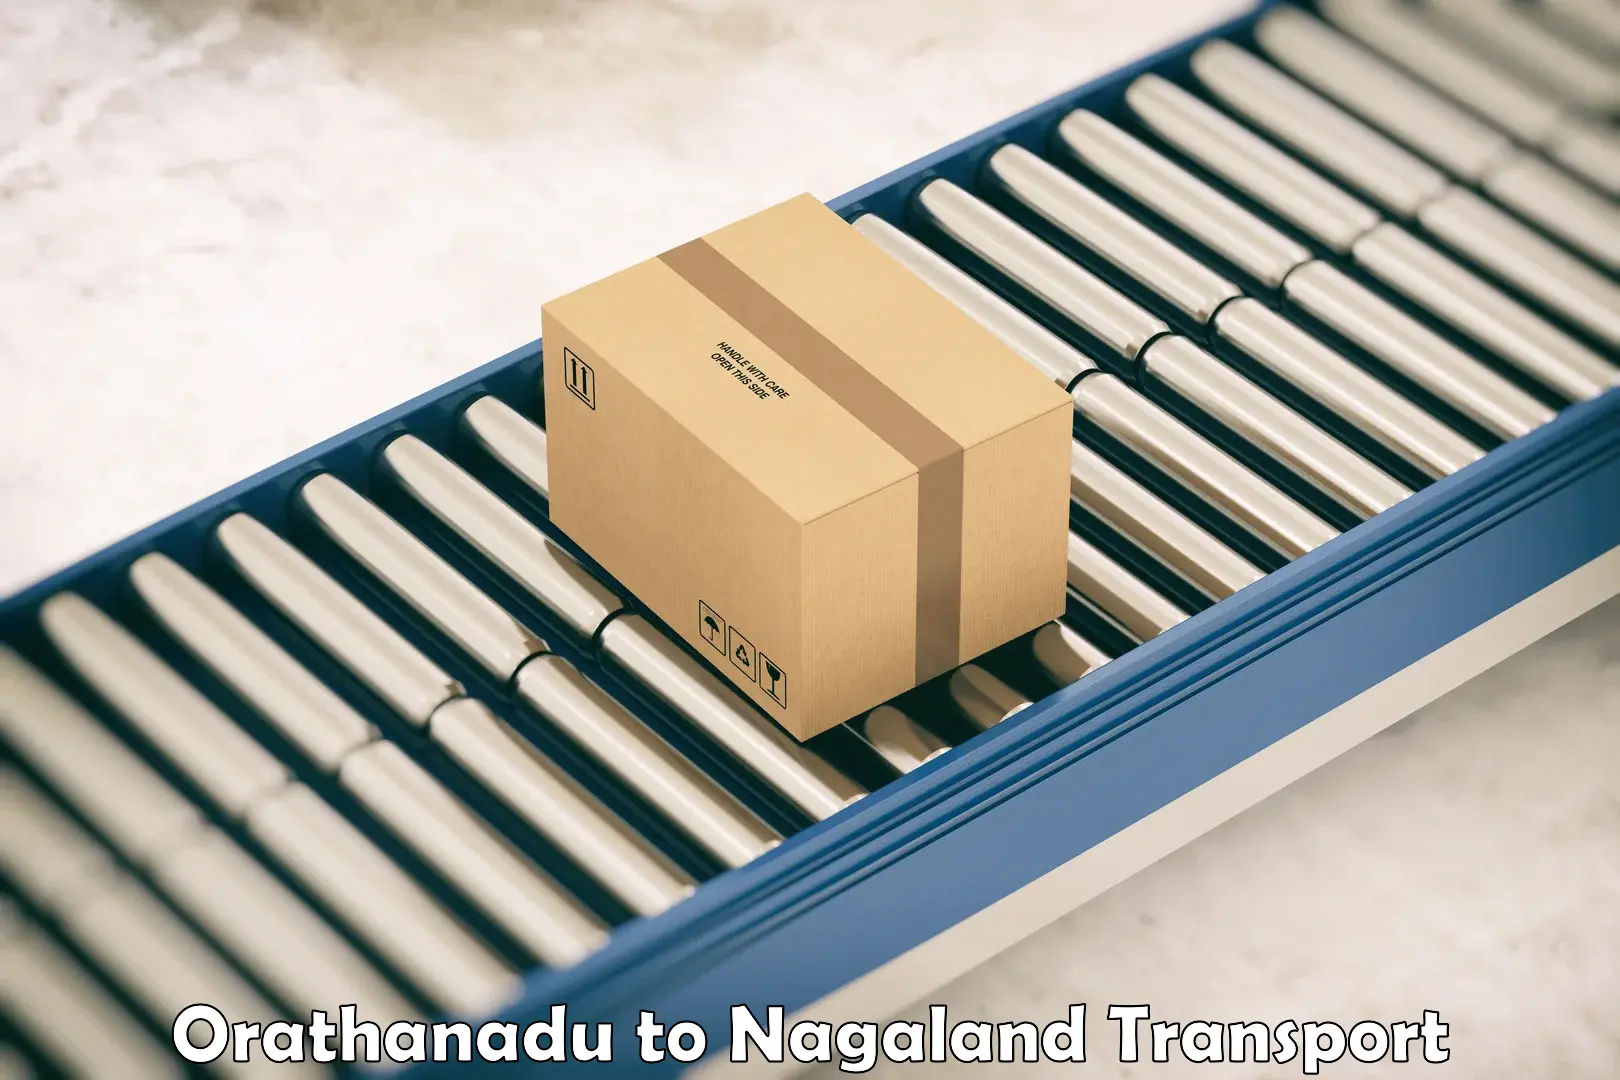 Commercial transport service Orathanadu to NIT Nagaland